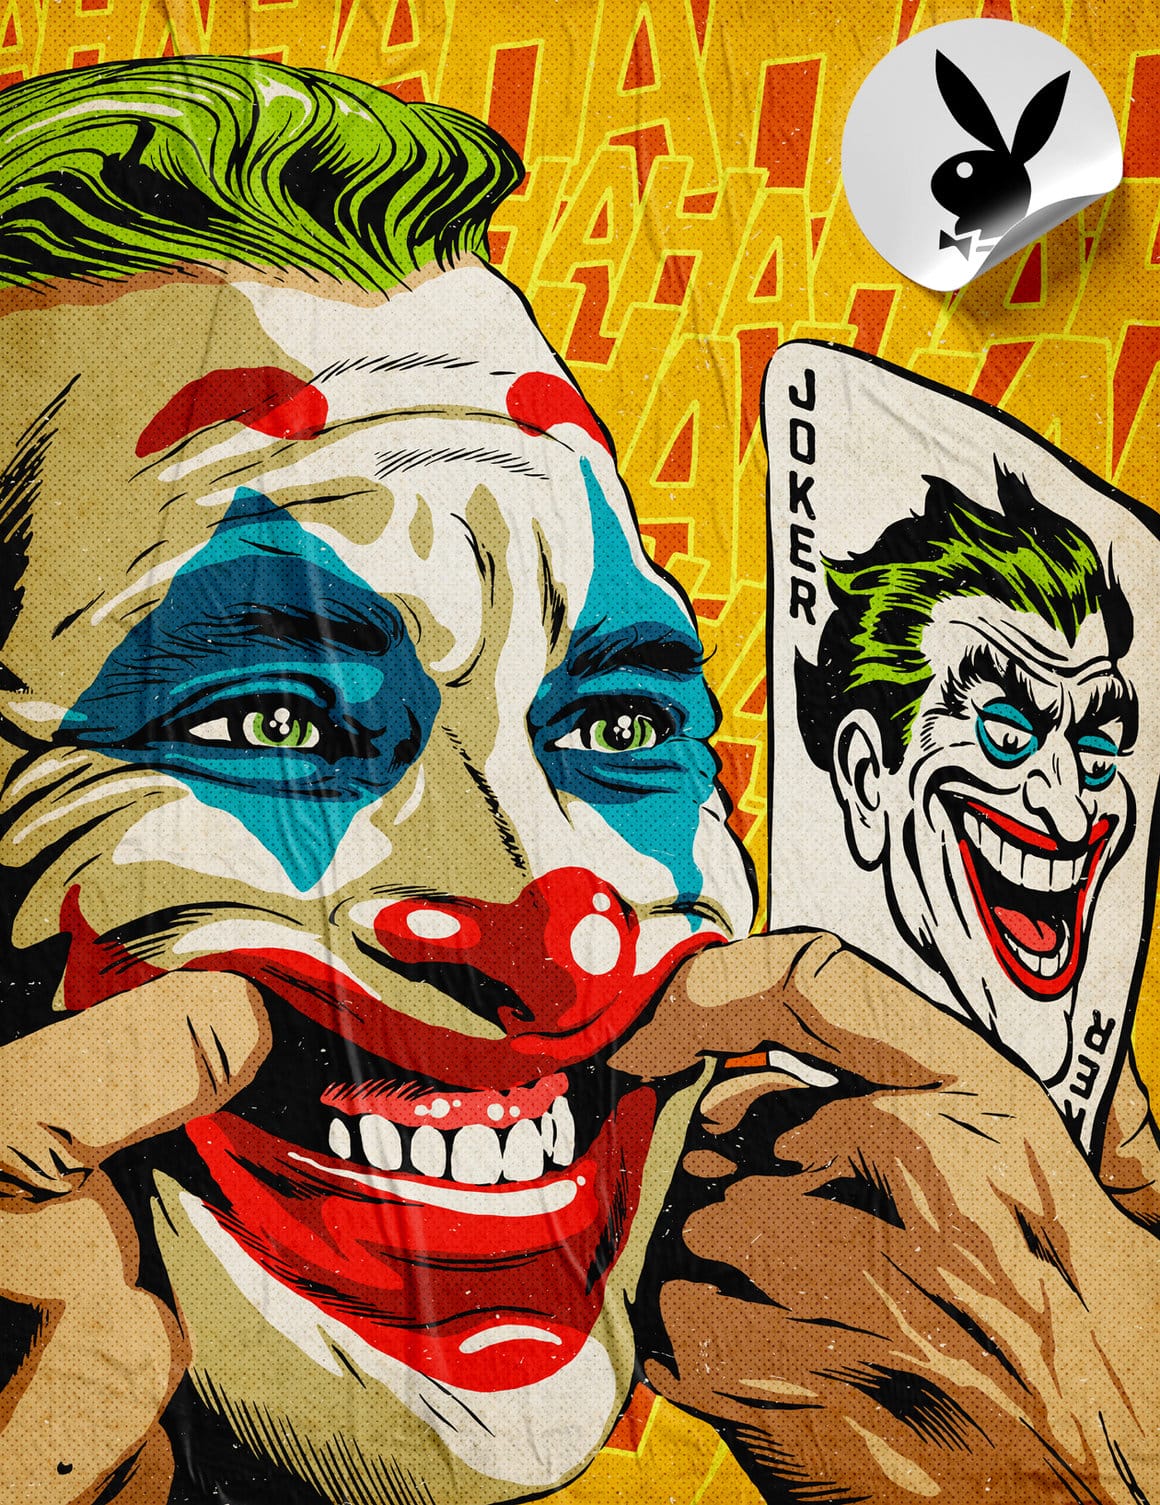 Illustration colorée d'un clown maquillé qui fait la grimace pour exagérer son sourire et imiter le Joker.